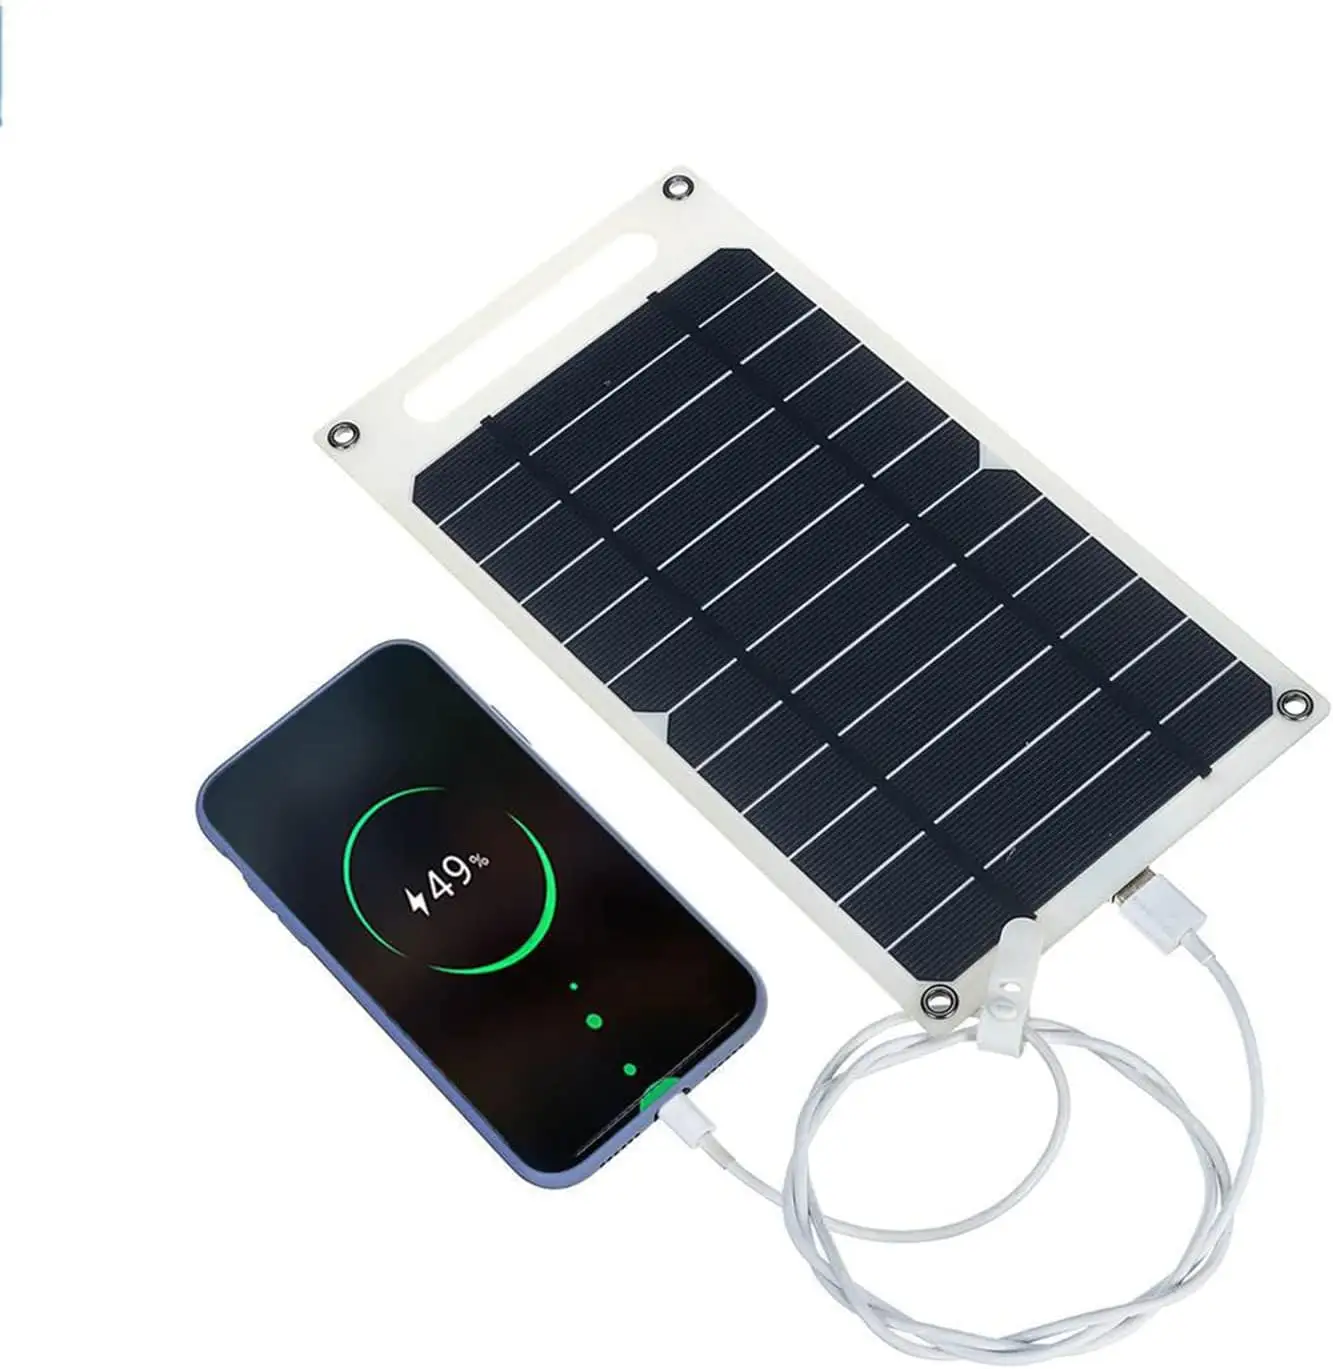 لوحة شحن طاقة مرنة بقدرة 6 وات لوحة شحن طاقة شمسية محمولة مزودة بواجهة USB للهواتف المحمولة مناسبة للأماكن الخارجية للتنزه والصيد والتخييم